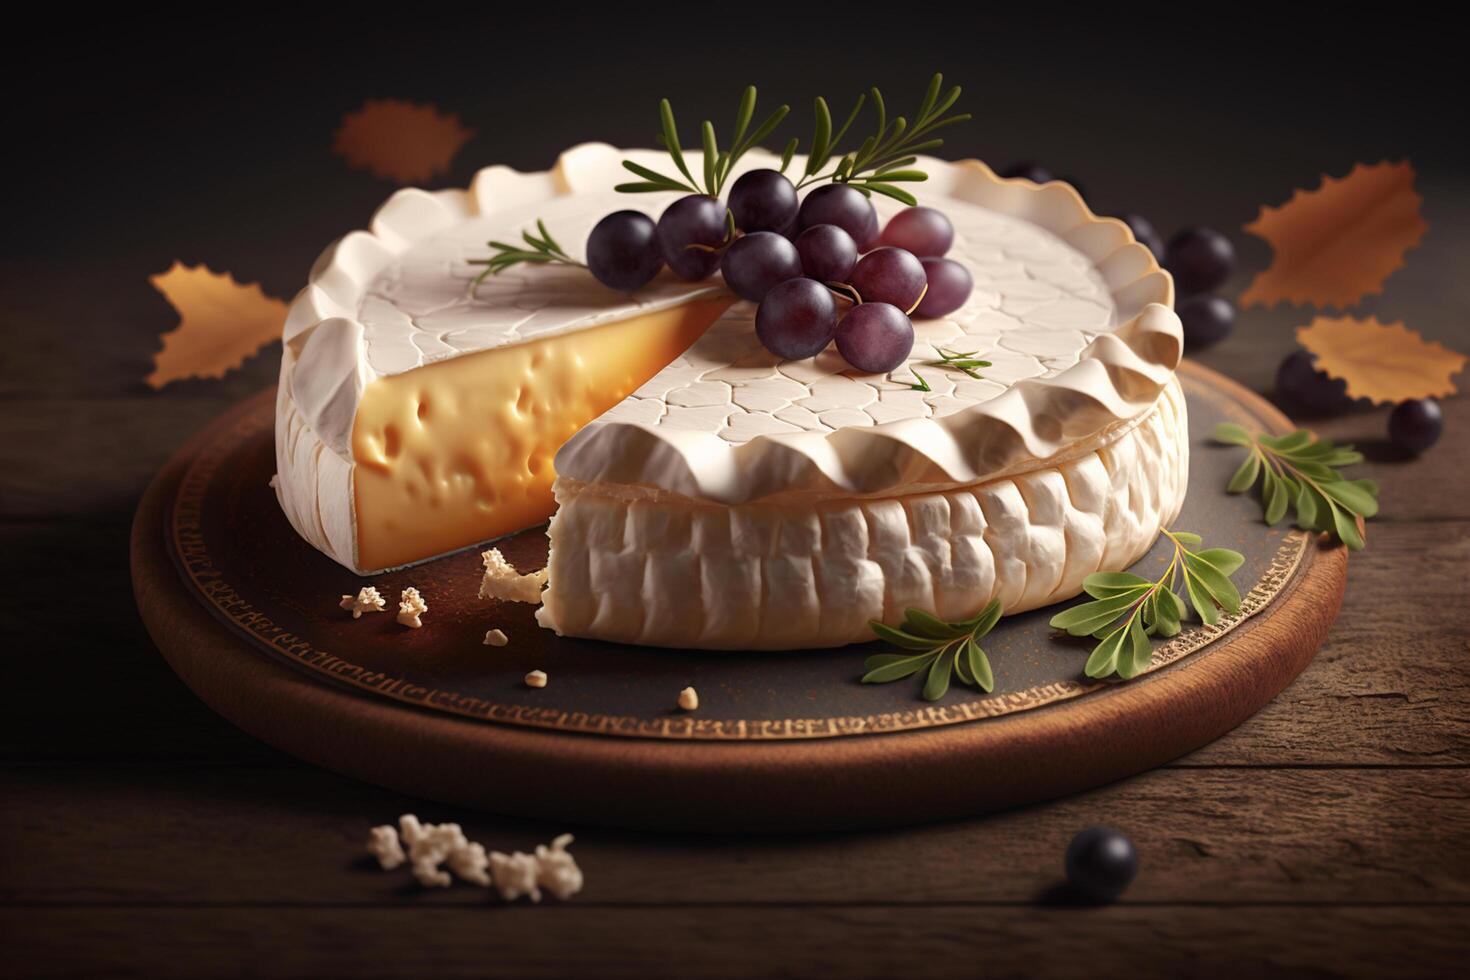 complacer en el cremoso delicias de queso Camembert queso desde Normandía ai generado foto